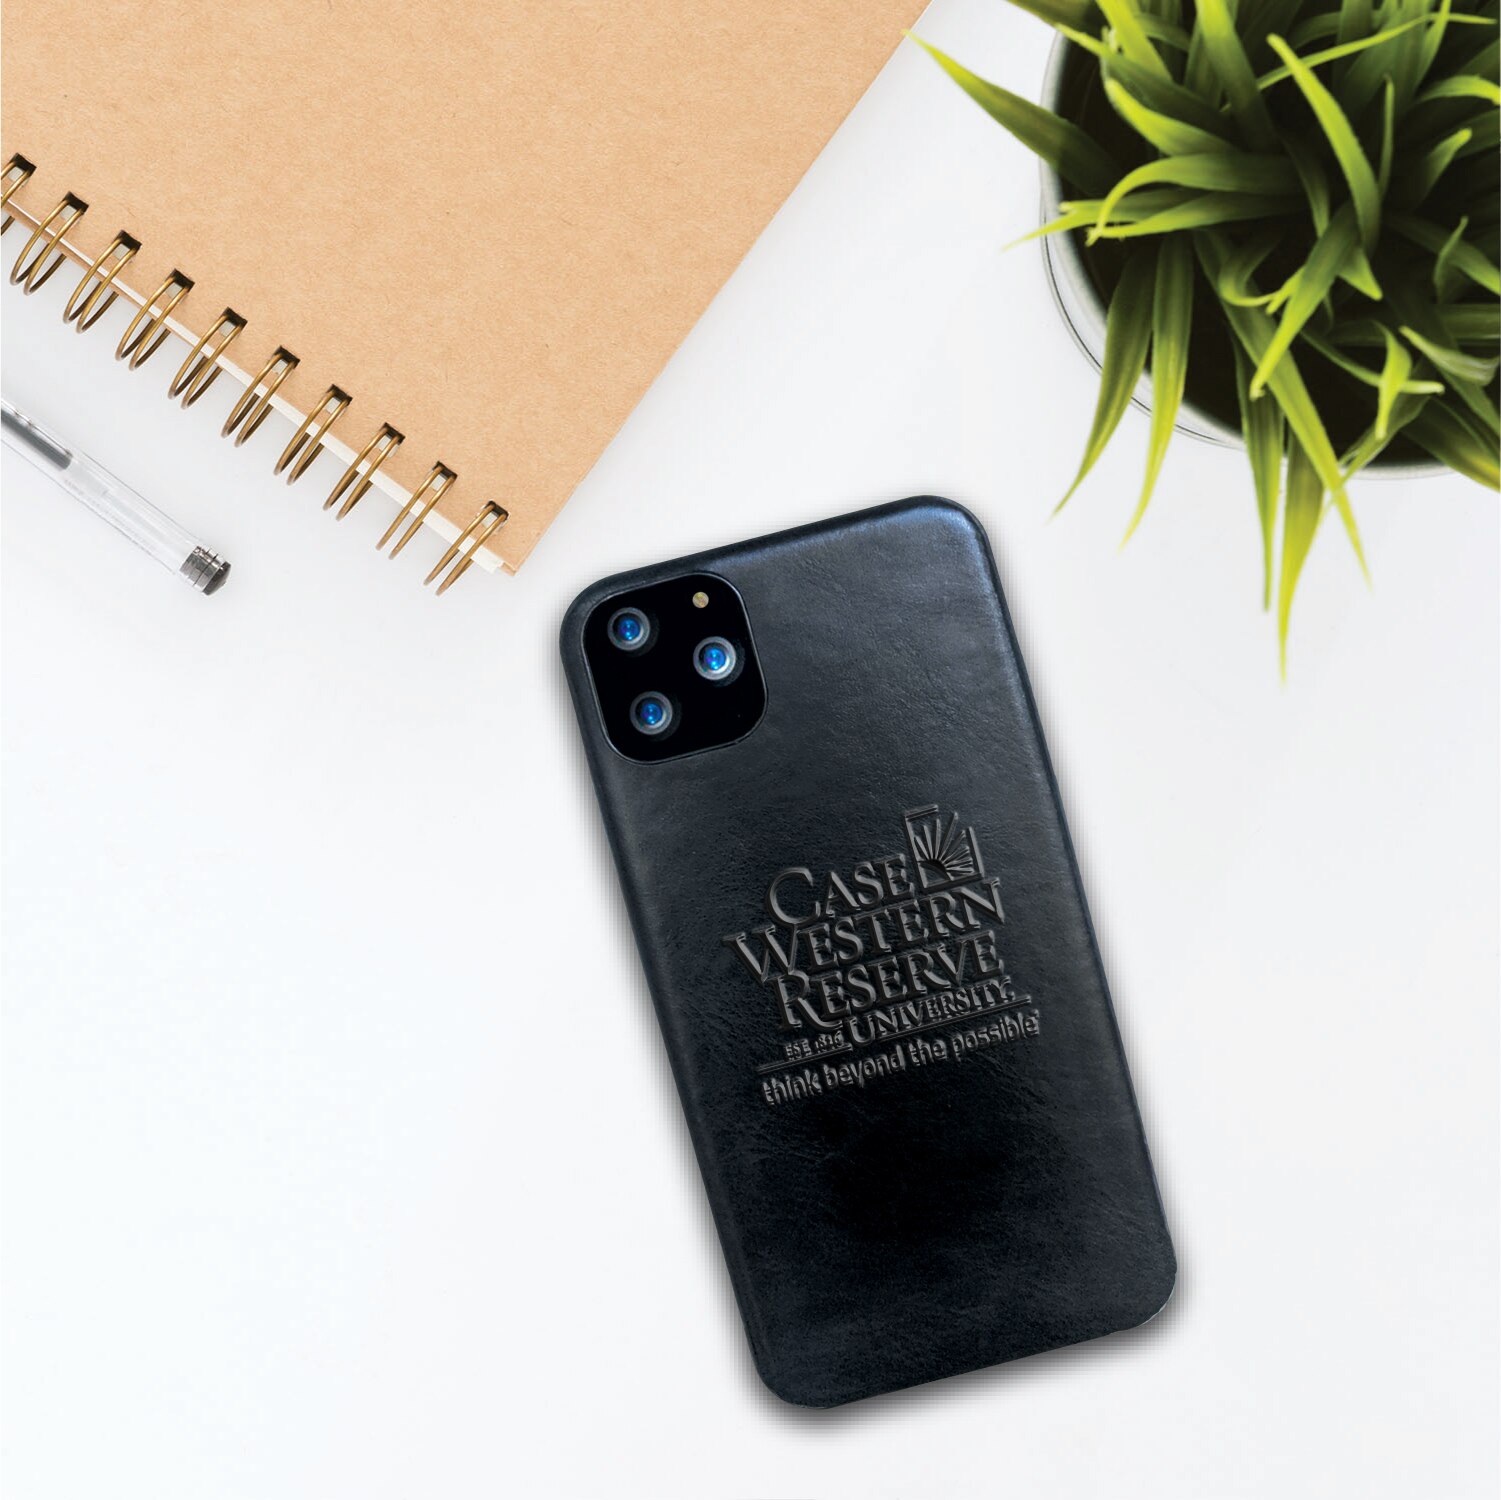 Case Western Reserve University Leather Shell Phone Case, Black, Alumni V2 - iPhone 12/12 Pro